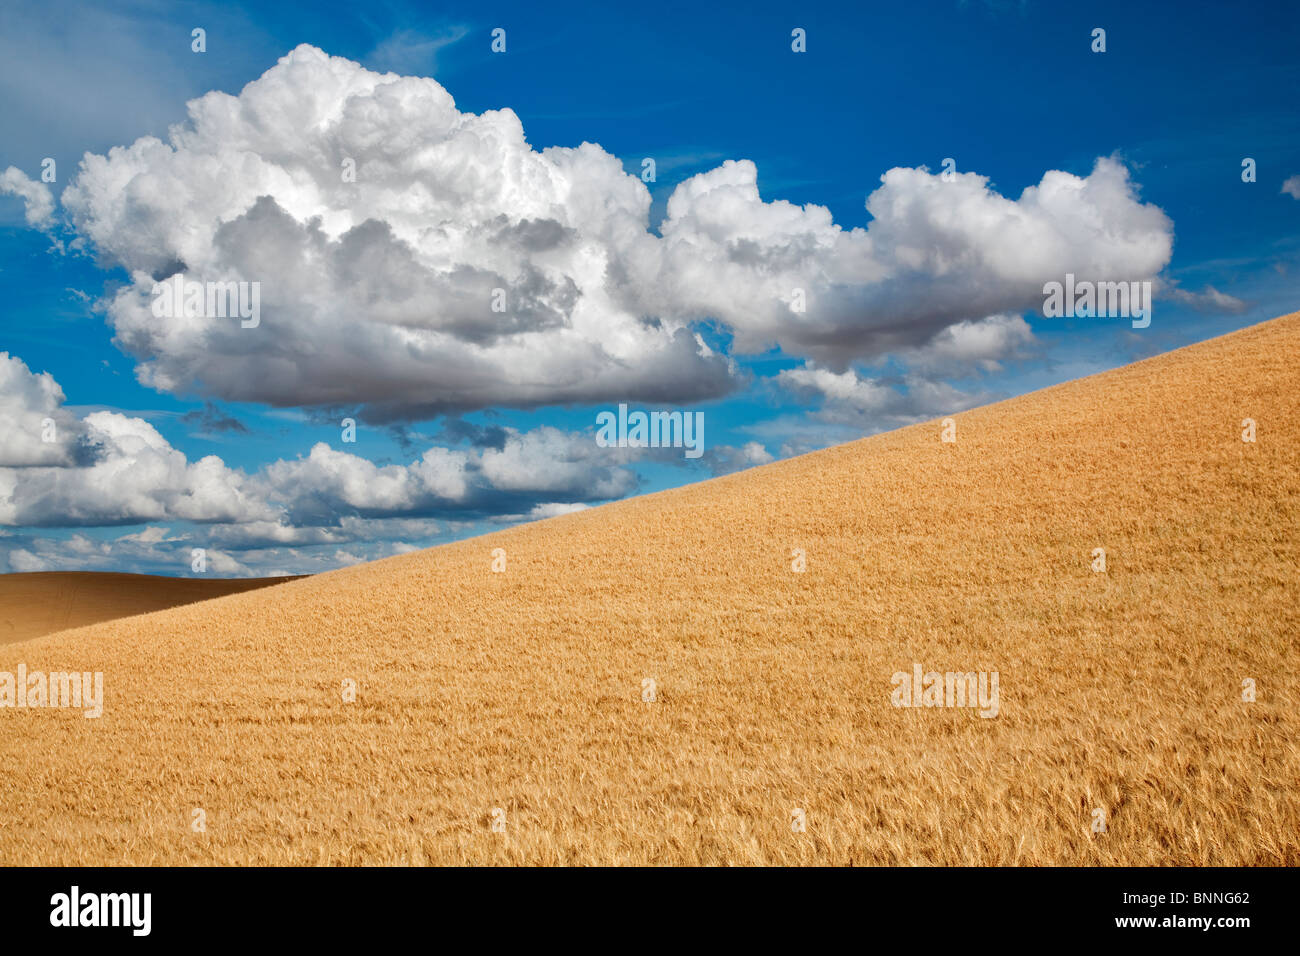 Nuages et champ de blé. La Palouse, Washington Banque D'Images